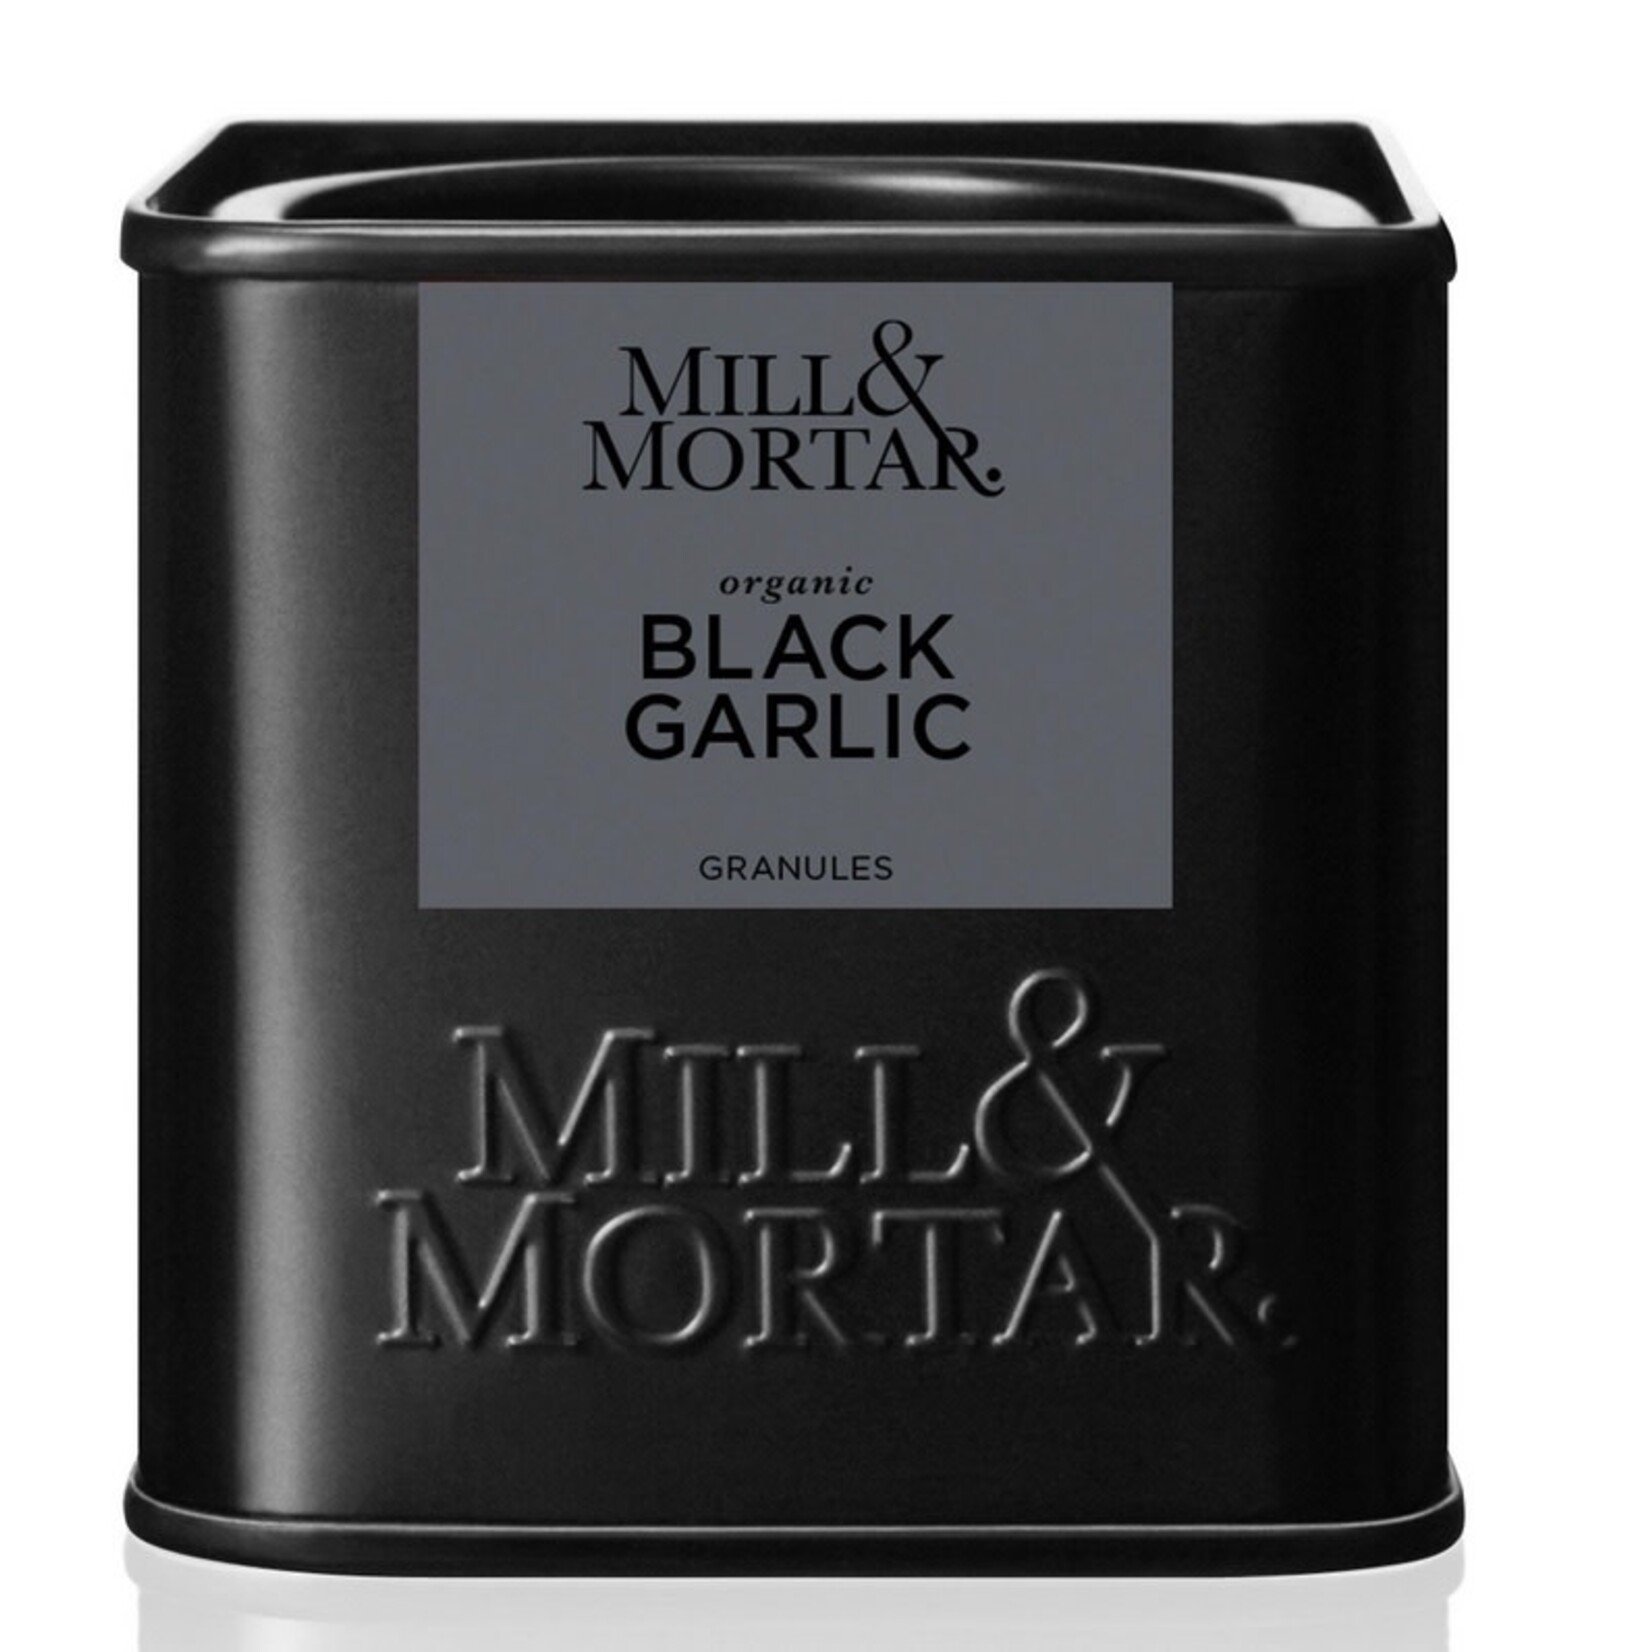 MILL & MORTAR MILL & MORTAR Black Garlic